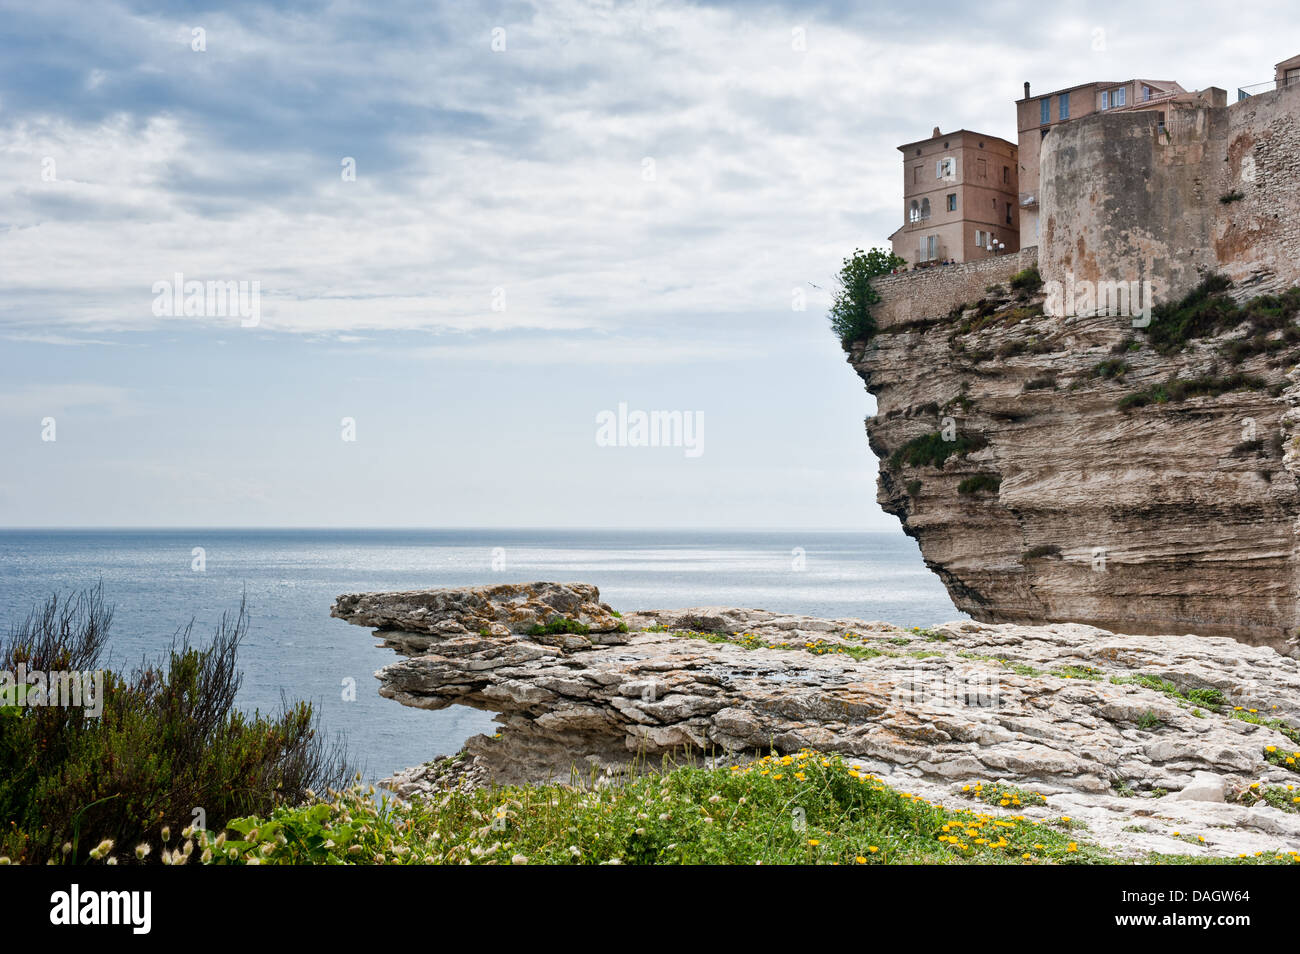 Bonifacio, Corse - 6 mai 2013 : maisons de la cité médiévale sur les falaises de calcaire de Bonifacio. Au cours de l'été Banque D'Images